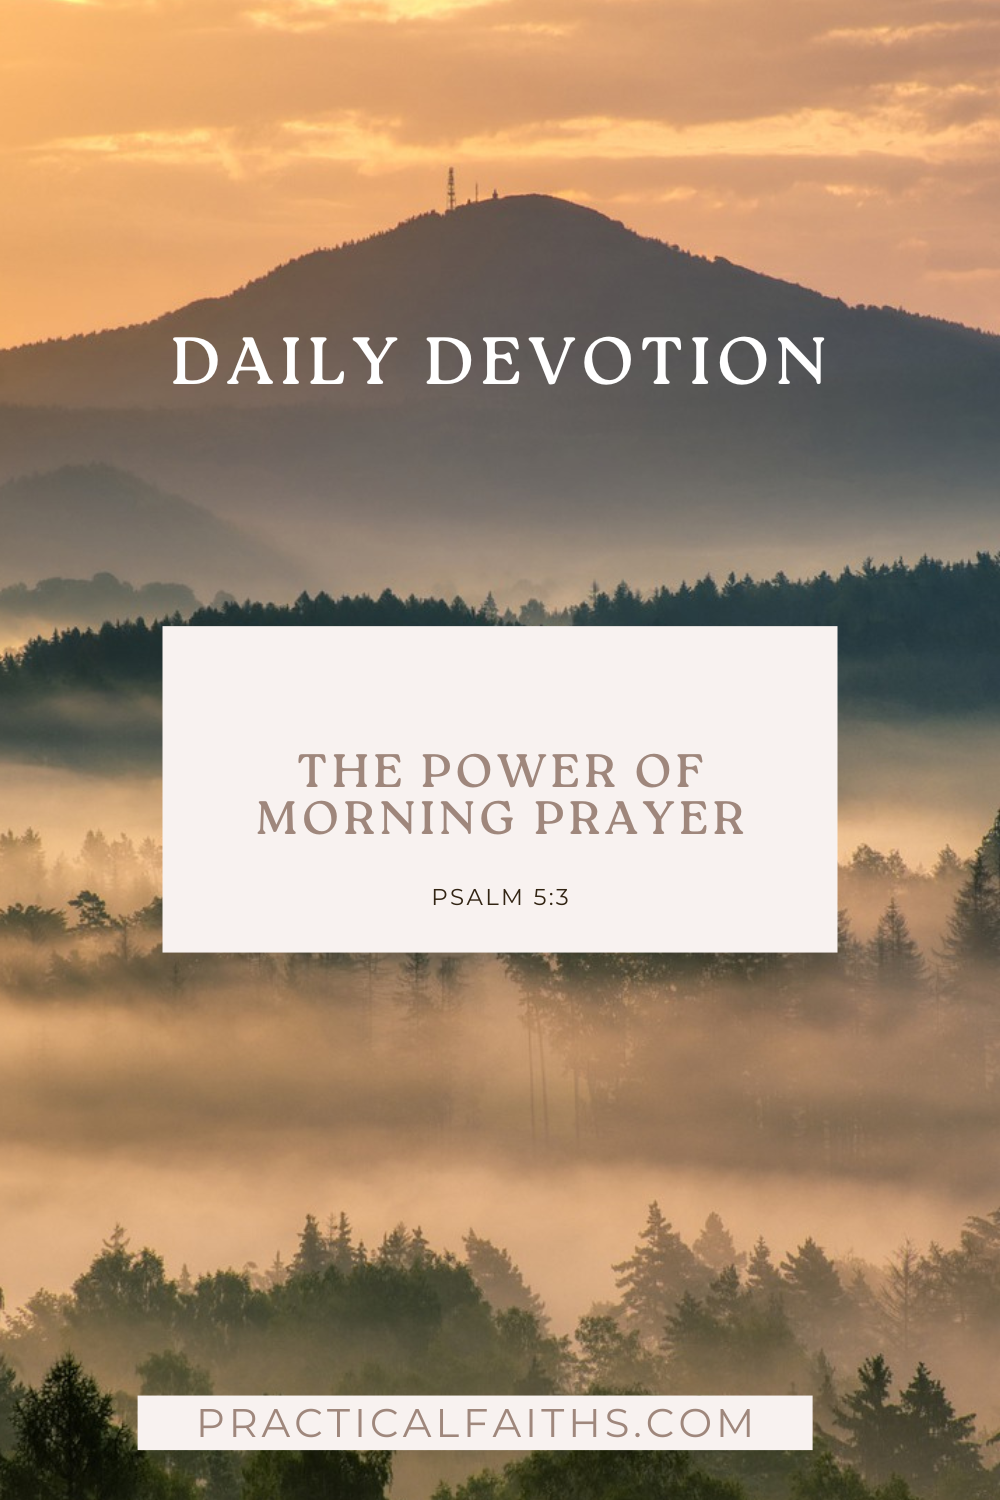 The Power of Morning Prayer